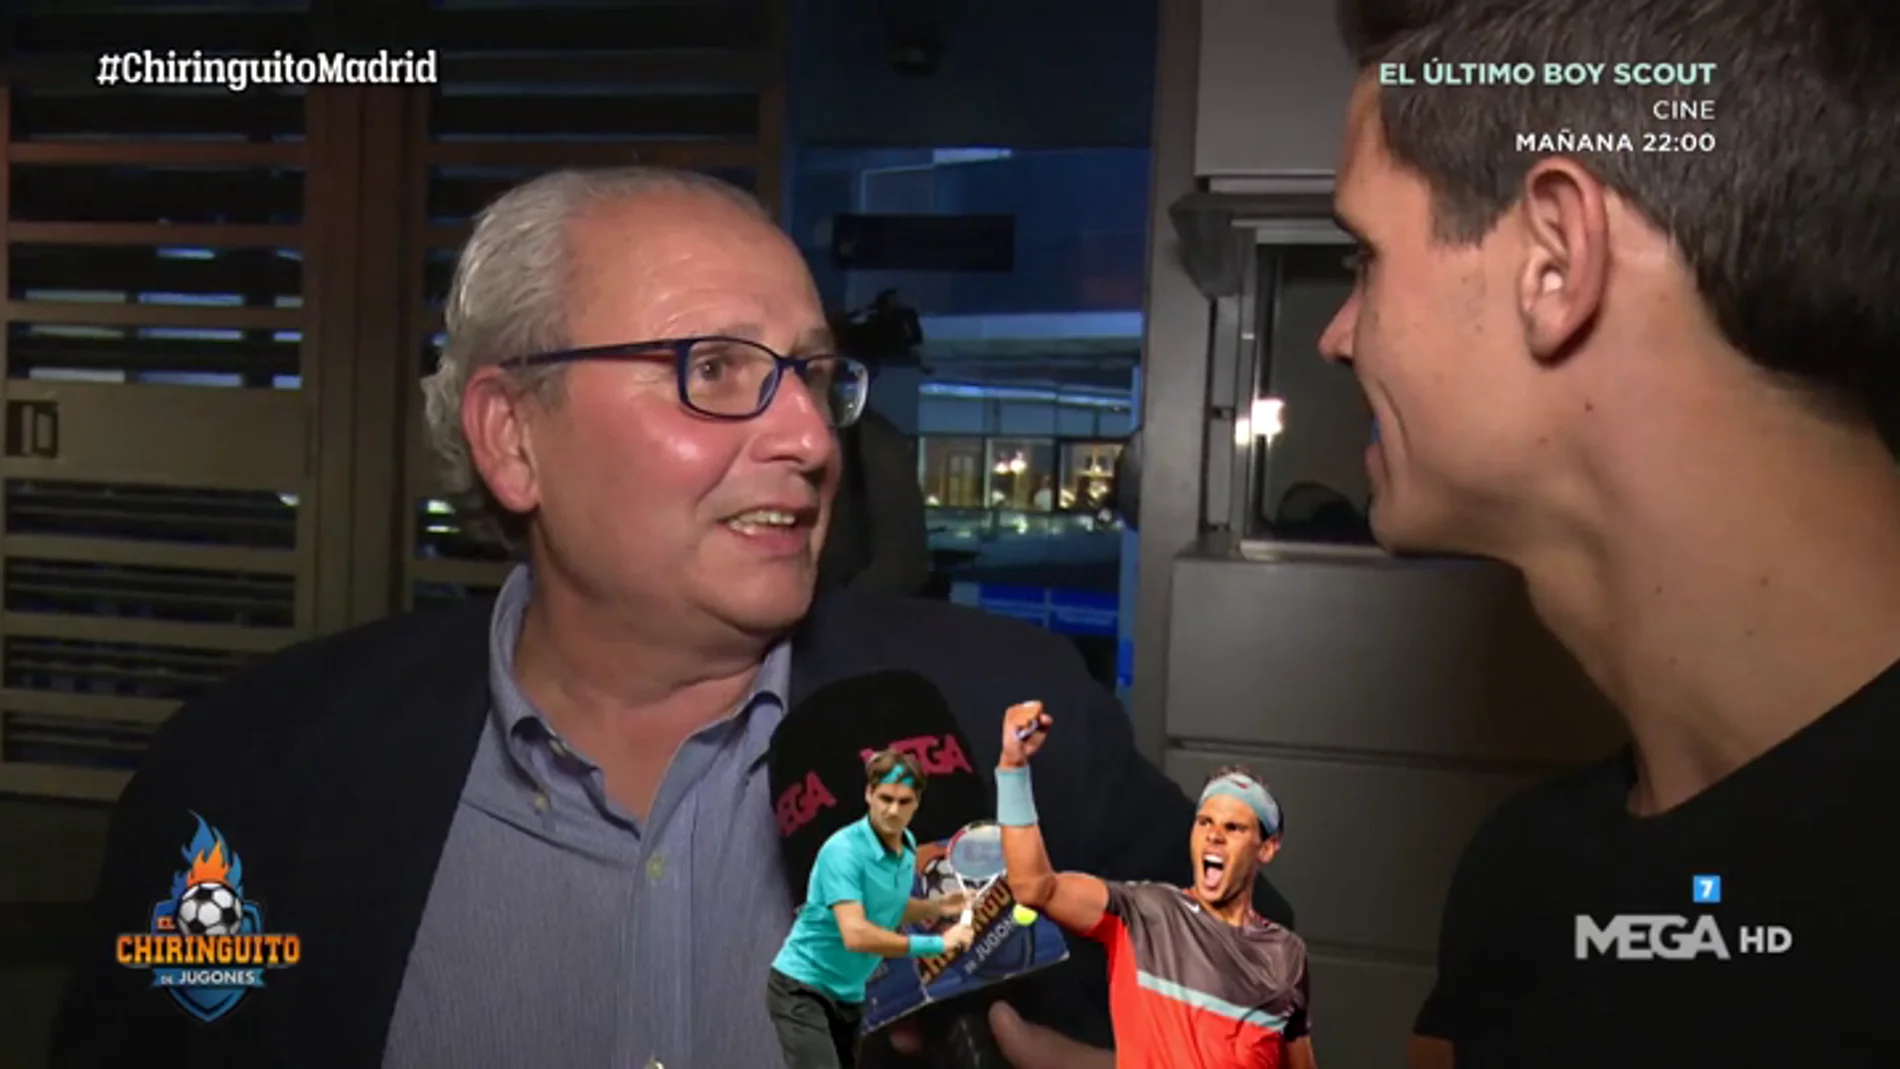 La 'locura' de Florentino: un Nadal-Federer en el Santiago Bernabéu